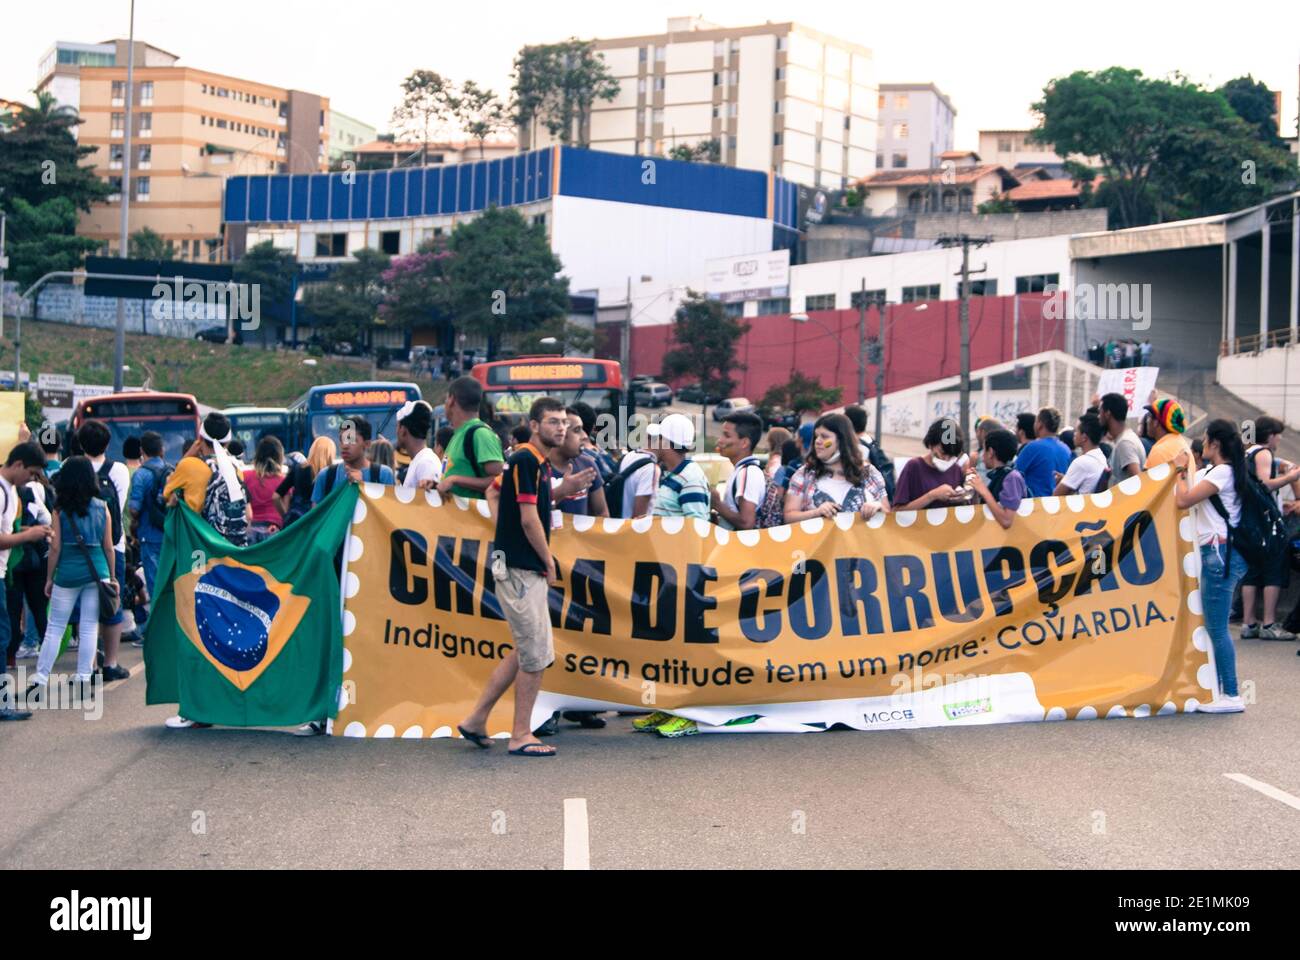 BELO HORIZONTE, MINAS GERAIS, BRASILIEN - 19. JUNI 2013: Demonstranten gegen die WM-Blockade. „genug Korruption. Empörung ohne Attitu Stockfoto